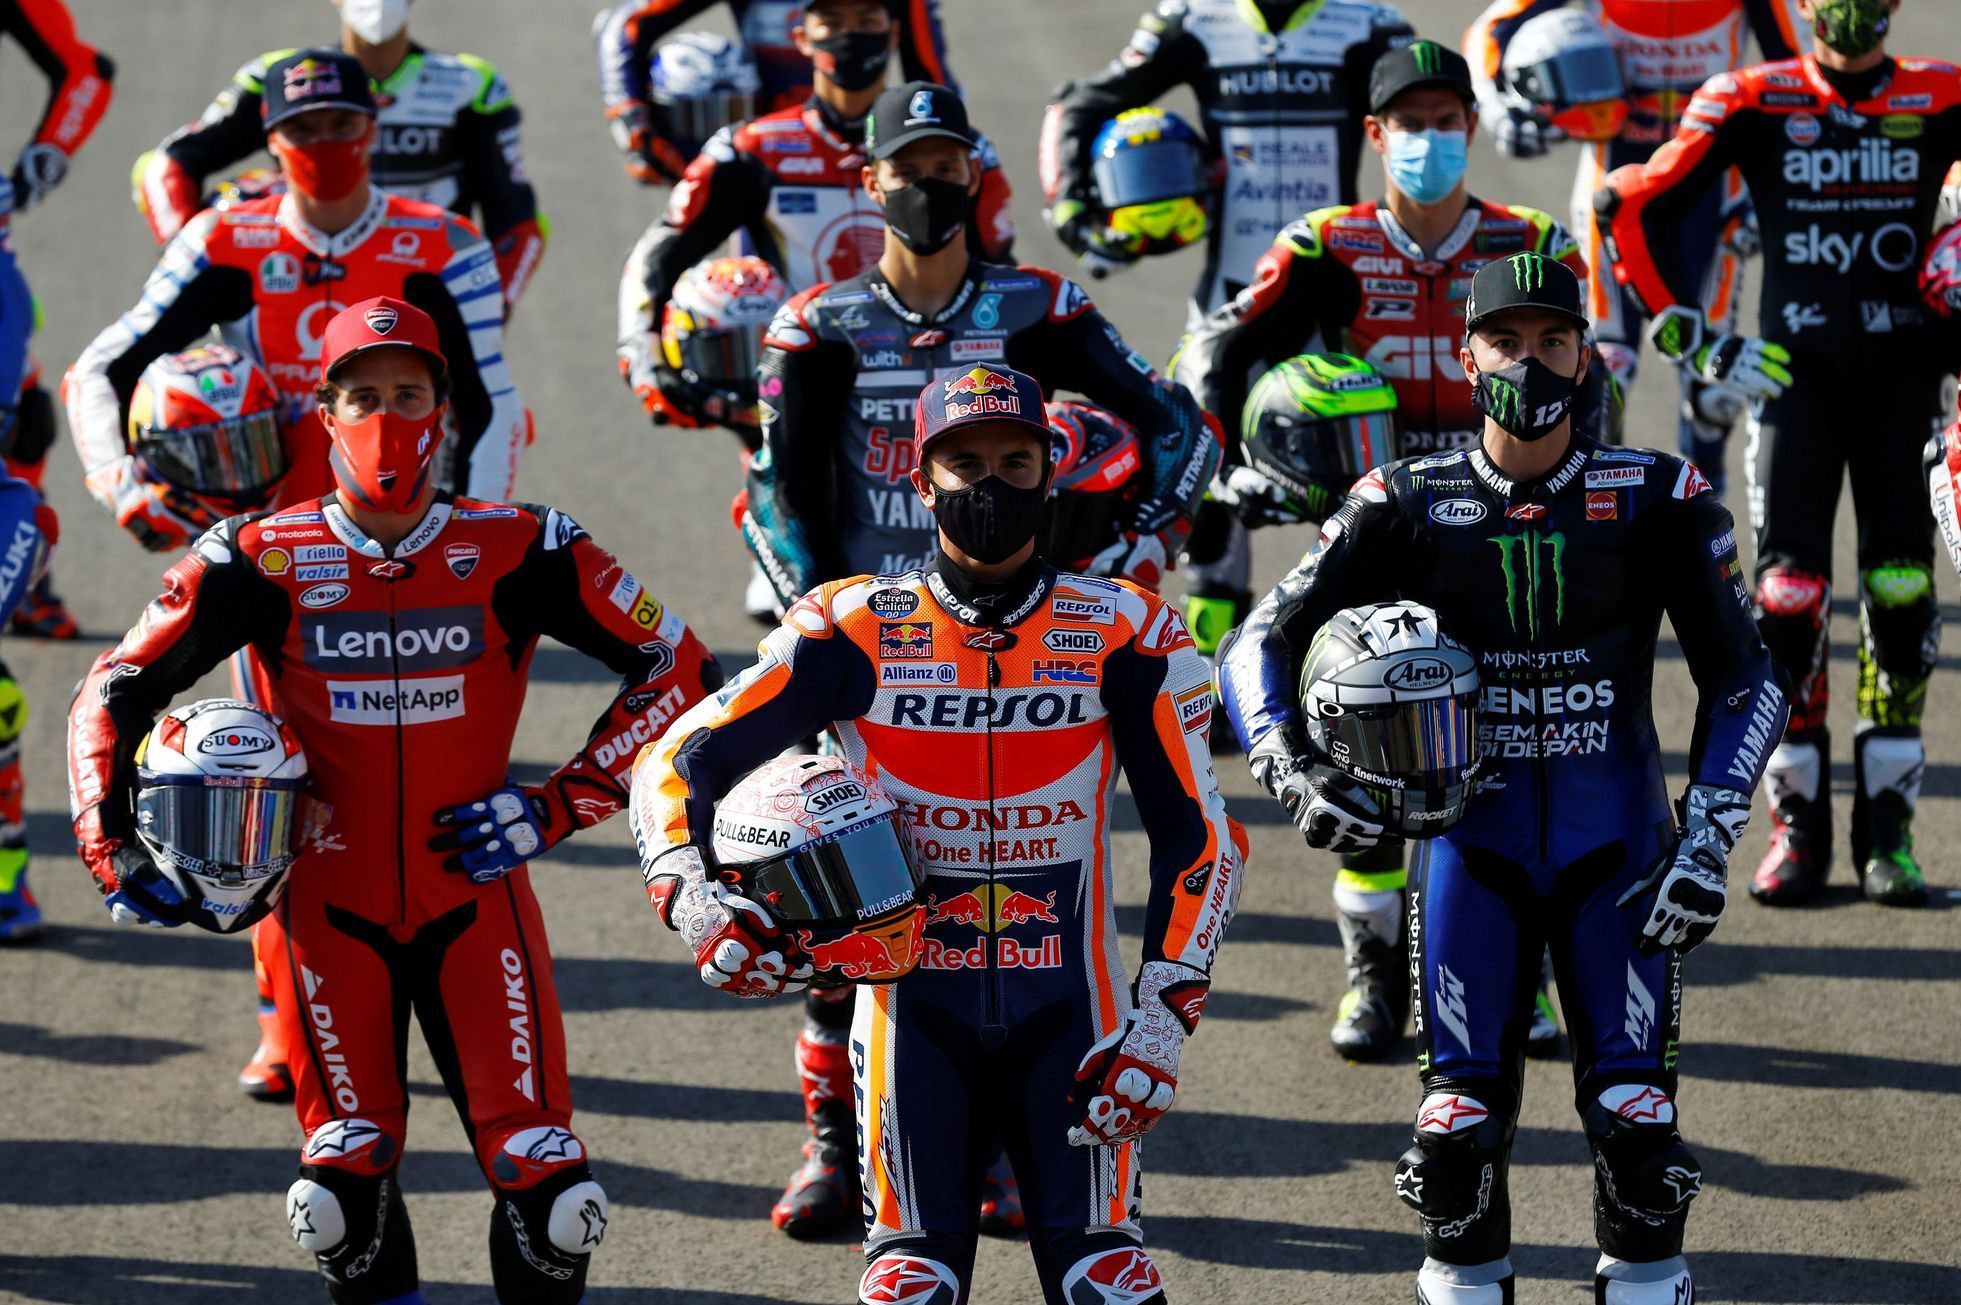 Jezdci MotoGP před prvním závodem sezony v Jerezu